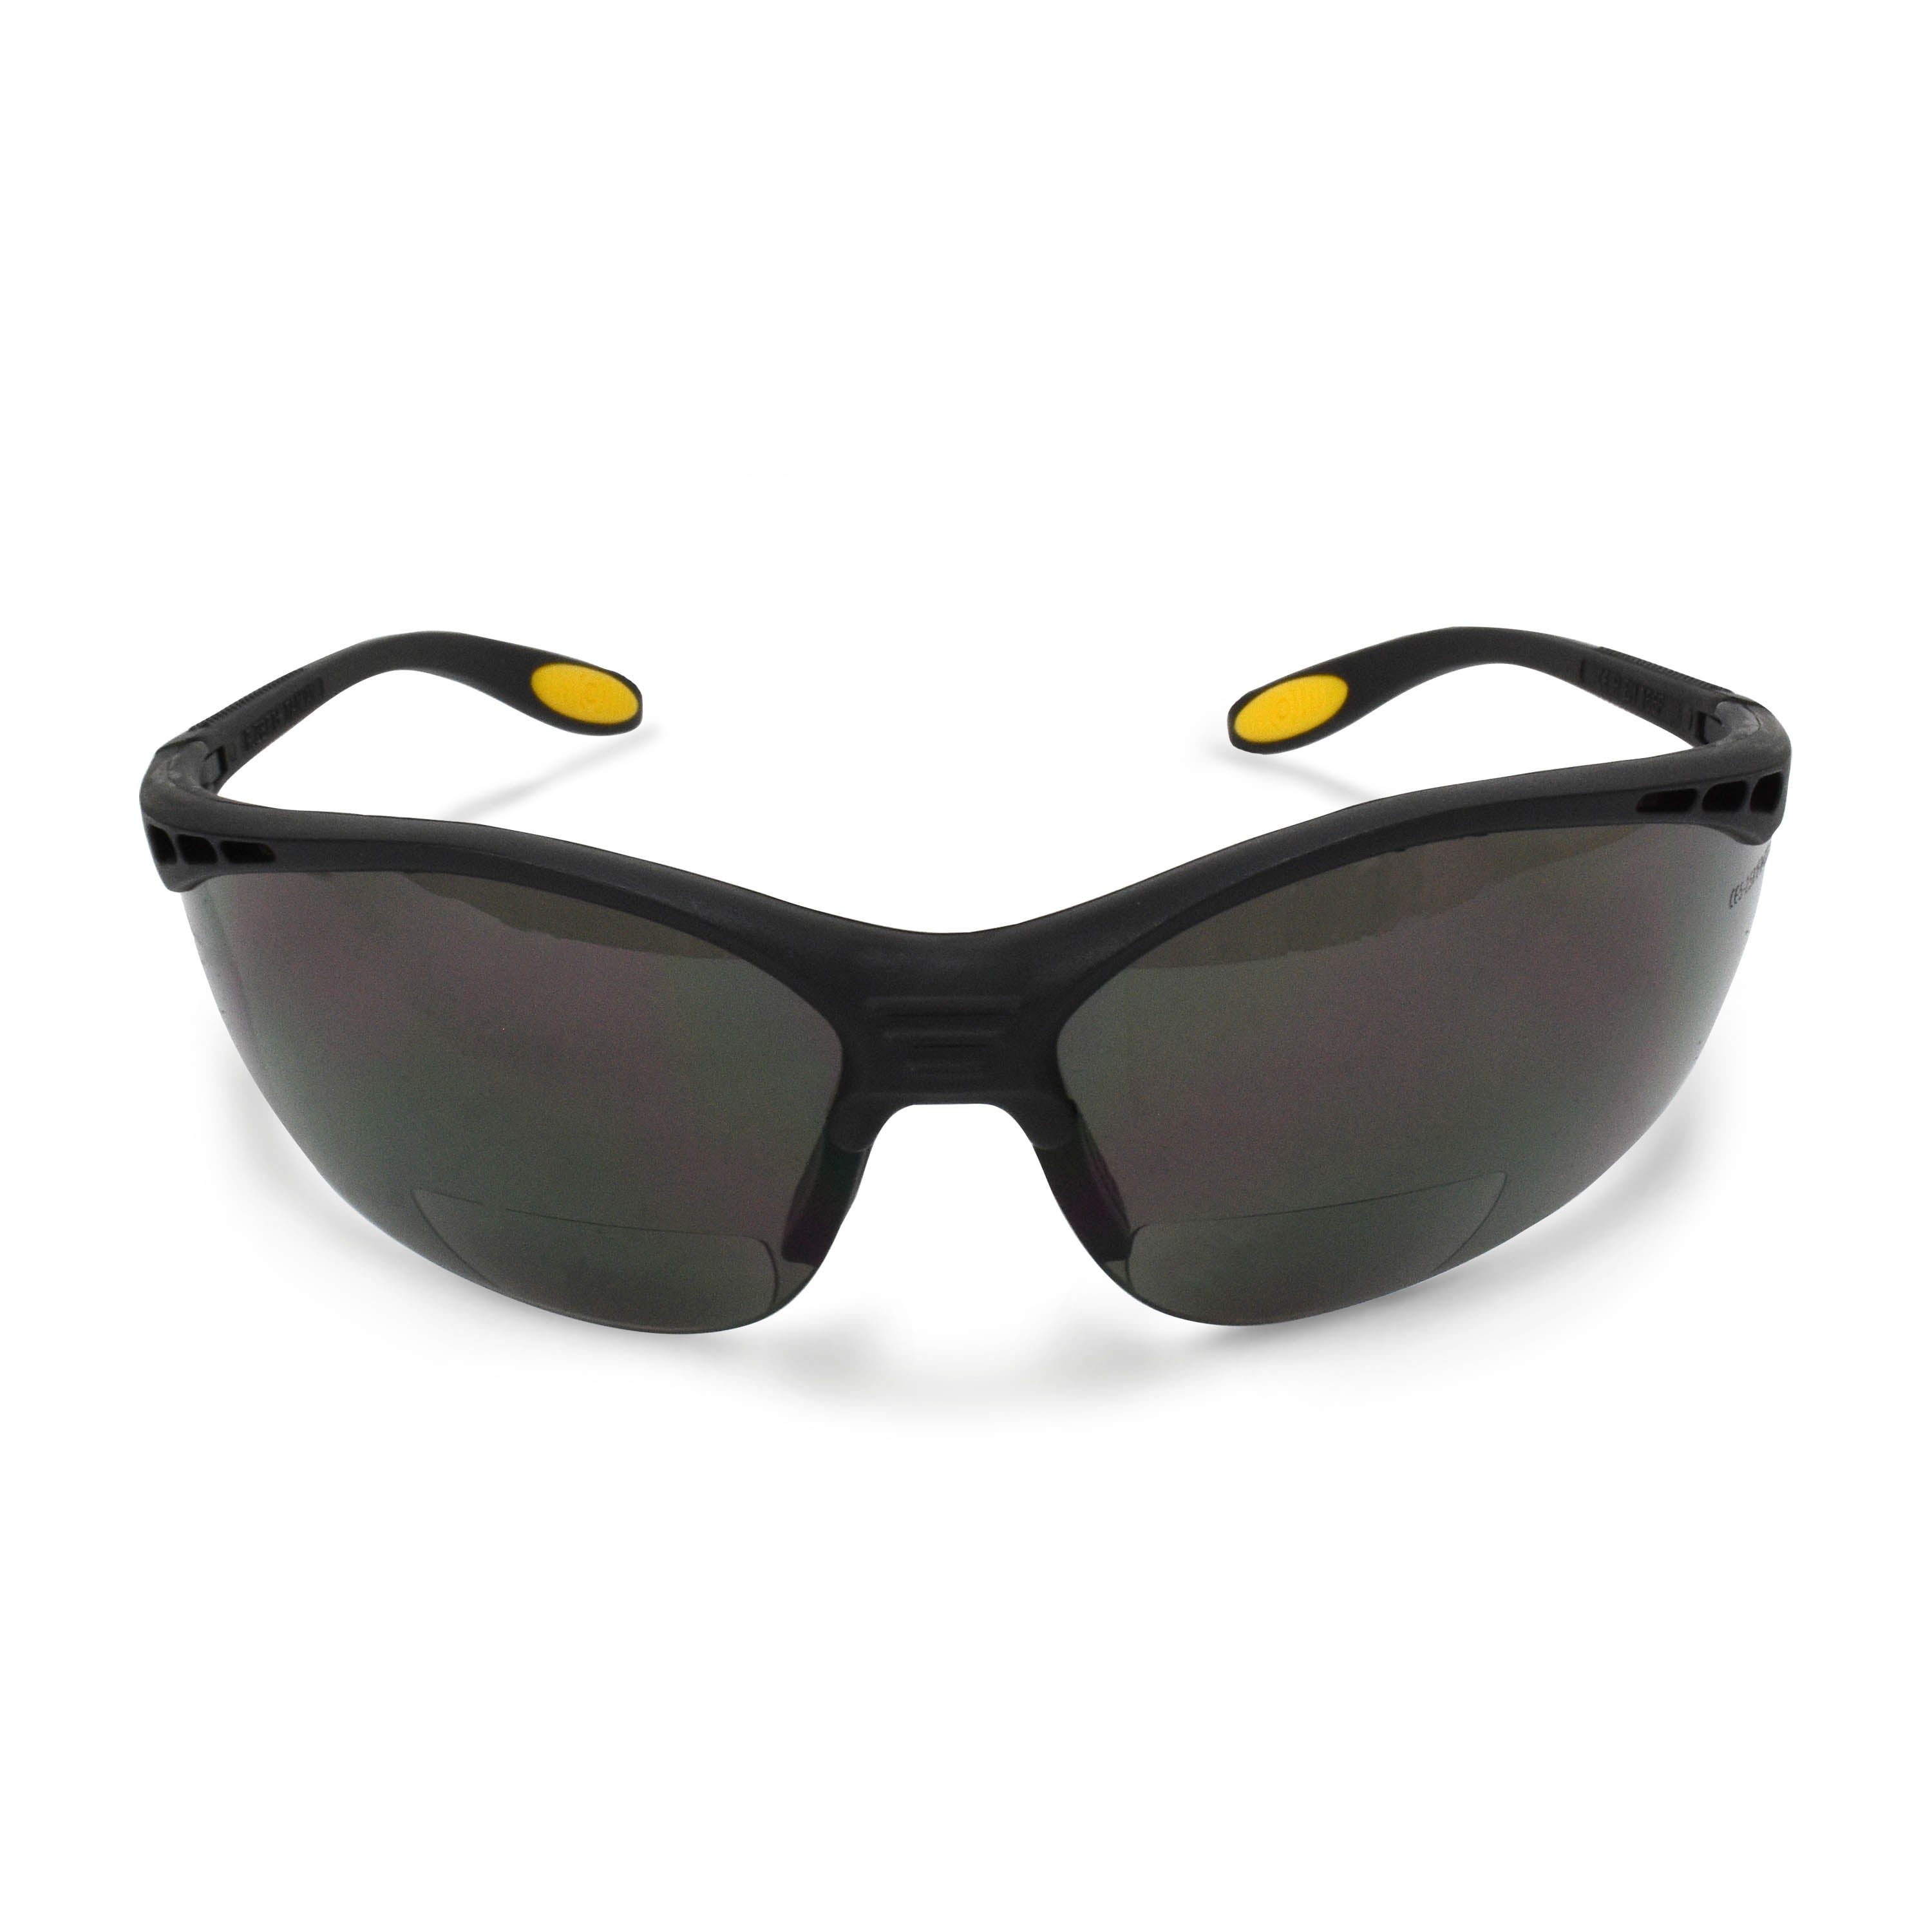 Gafas bifocales DeWALT Reinforcer (caja de 12) - Montura negra de dioptrías 2.0 ahumadas con funda protectora